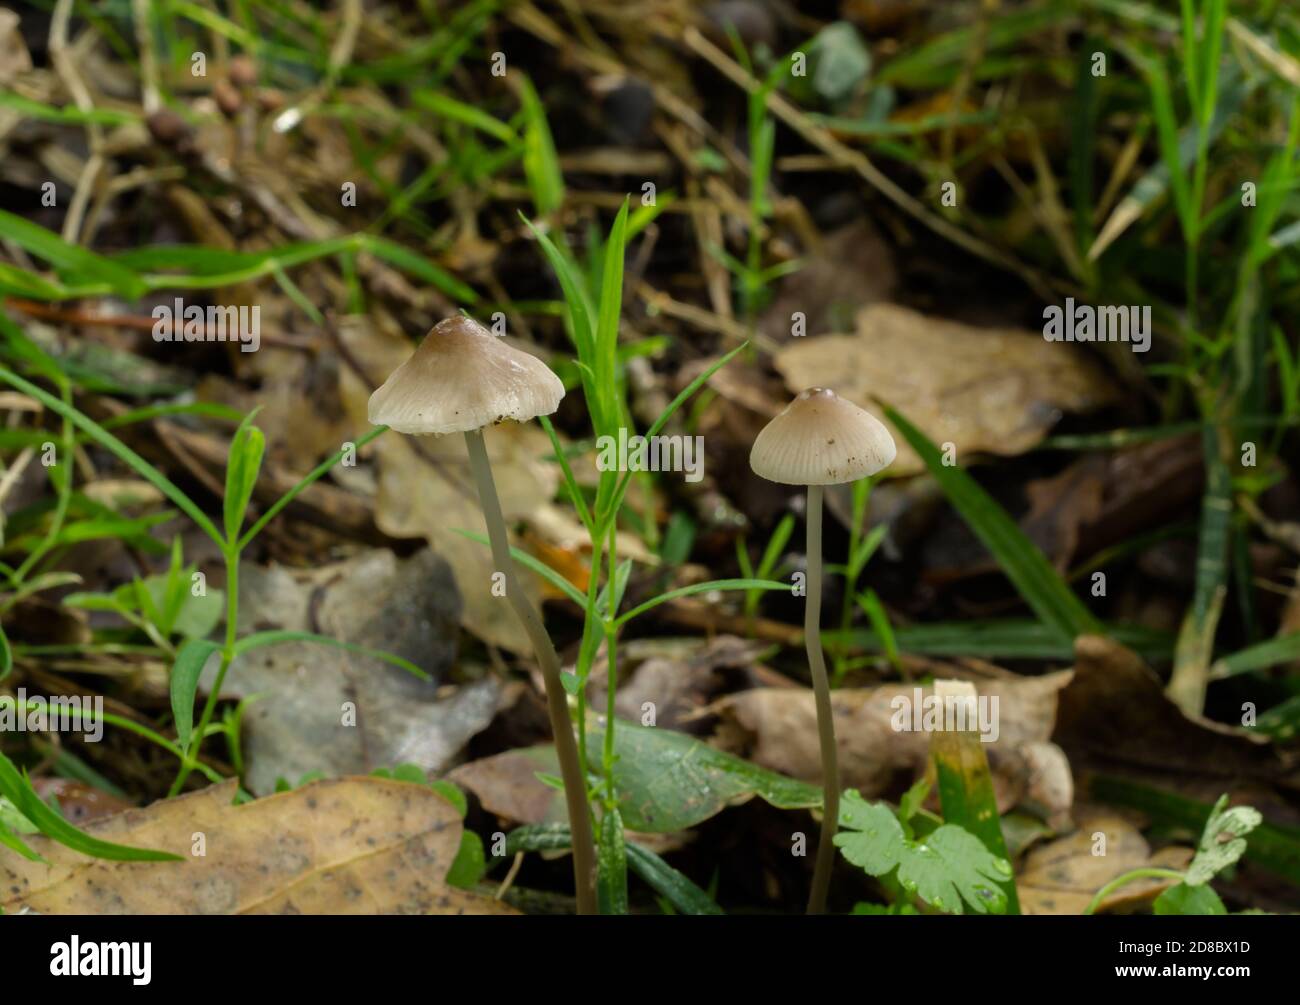 Ein Paar Feenhaube oder mycena galericulata Pilze auf einem feuchten Waldboden. Stockfoto